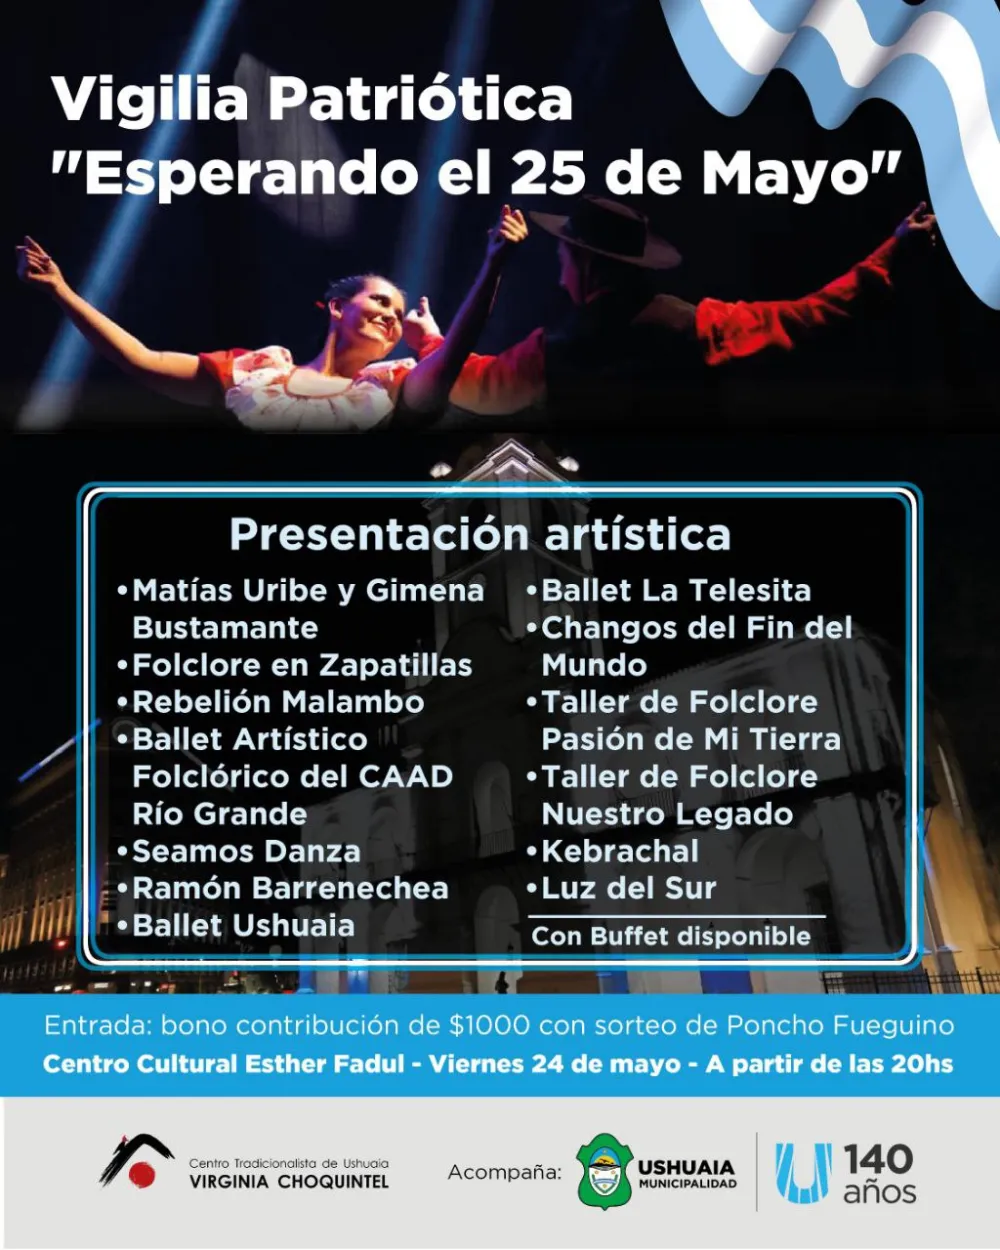 La Municipalidad de Ushuaia acompañará la vigilia patriótica "Esperando el 25 de Mayo" en el Centro Cultural Esther Fadul